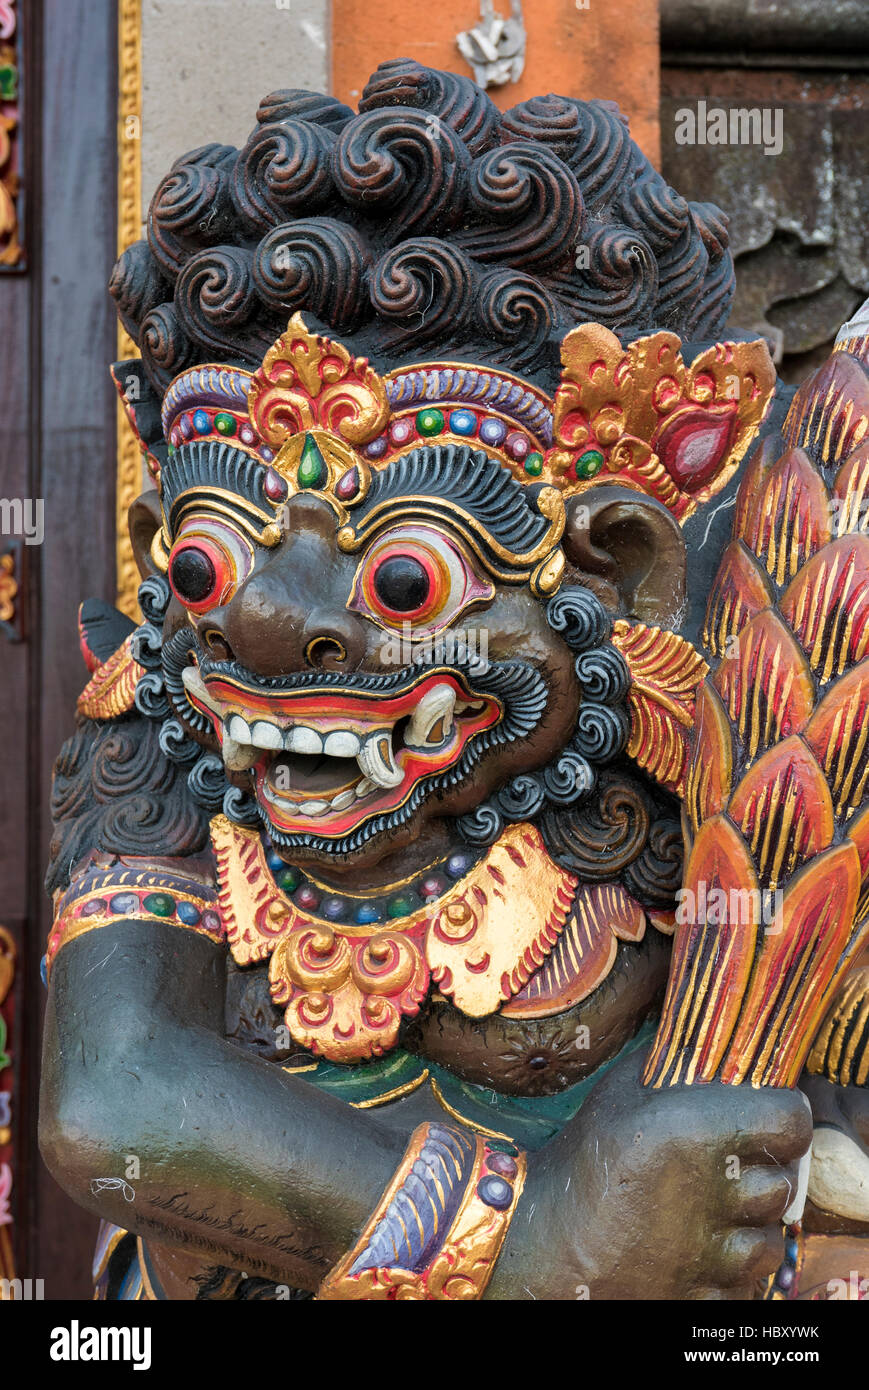 Dragon wooden sculpture on temple door in Bali, Indonesia Stock Photo